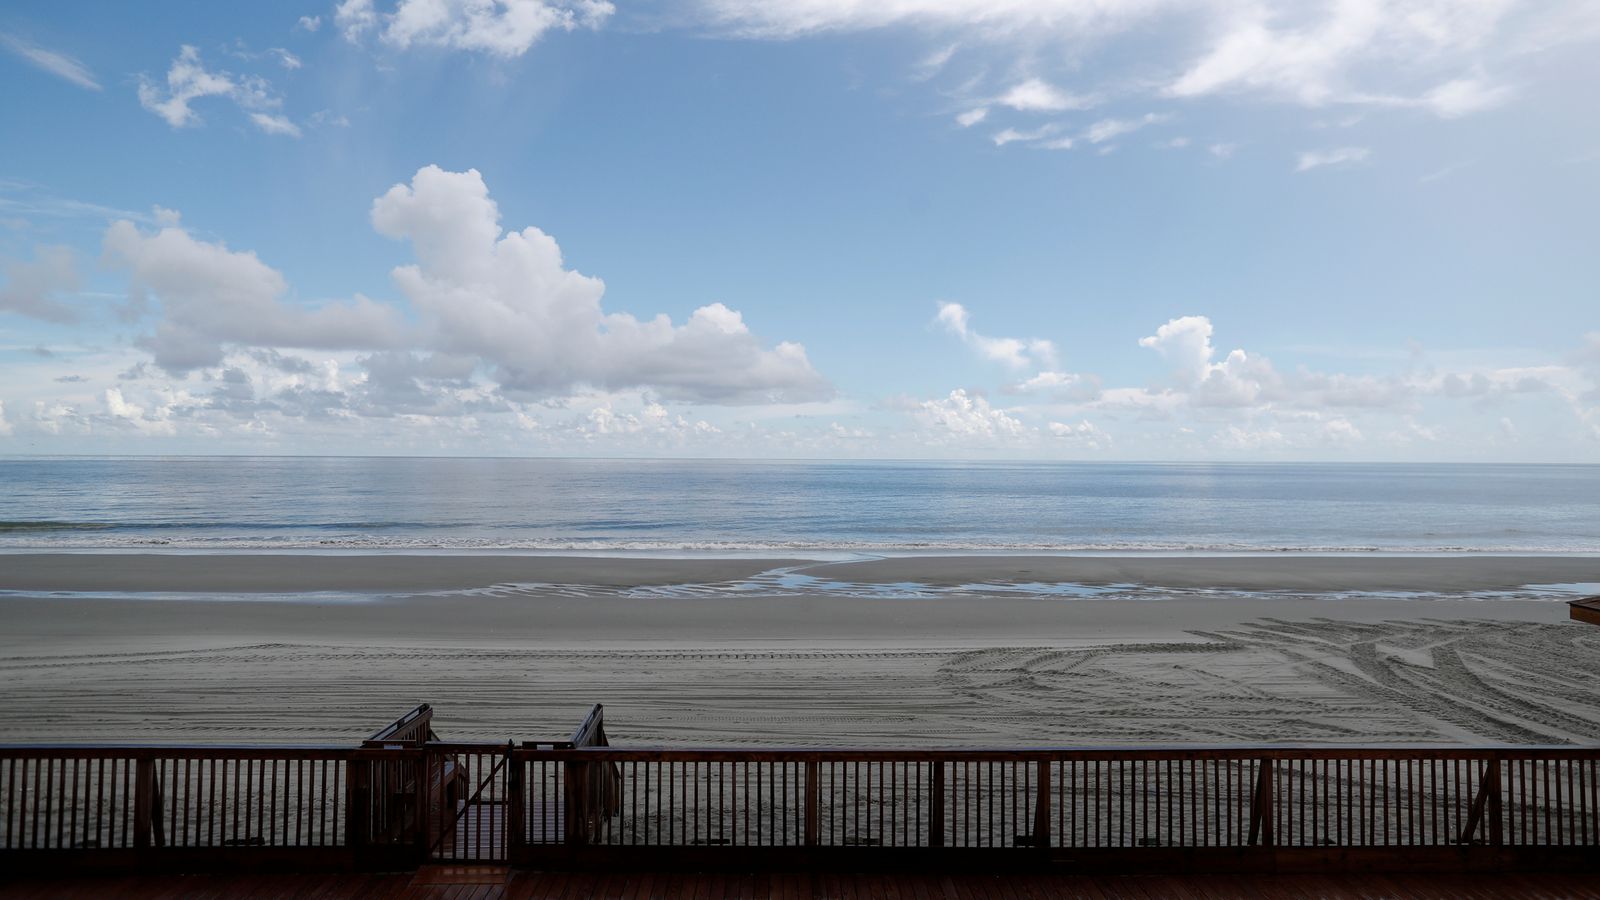 Ombrello spazzato dal vento uccide una donna sulla spiaggia della Carolina del Sud |  Notizie dagli Stati Uniti